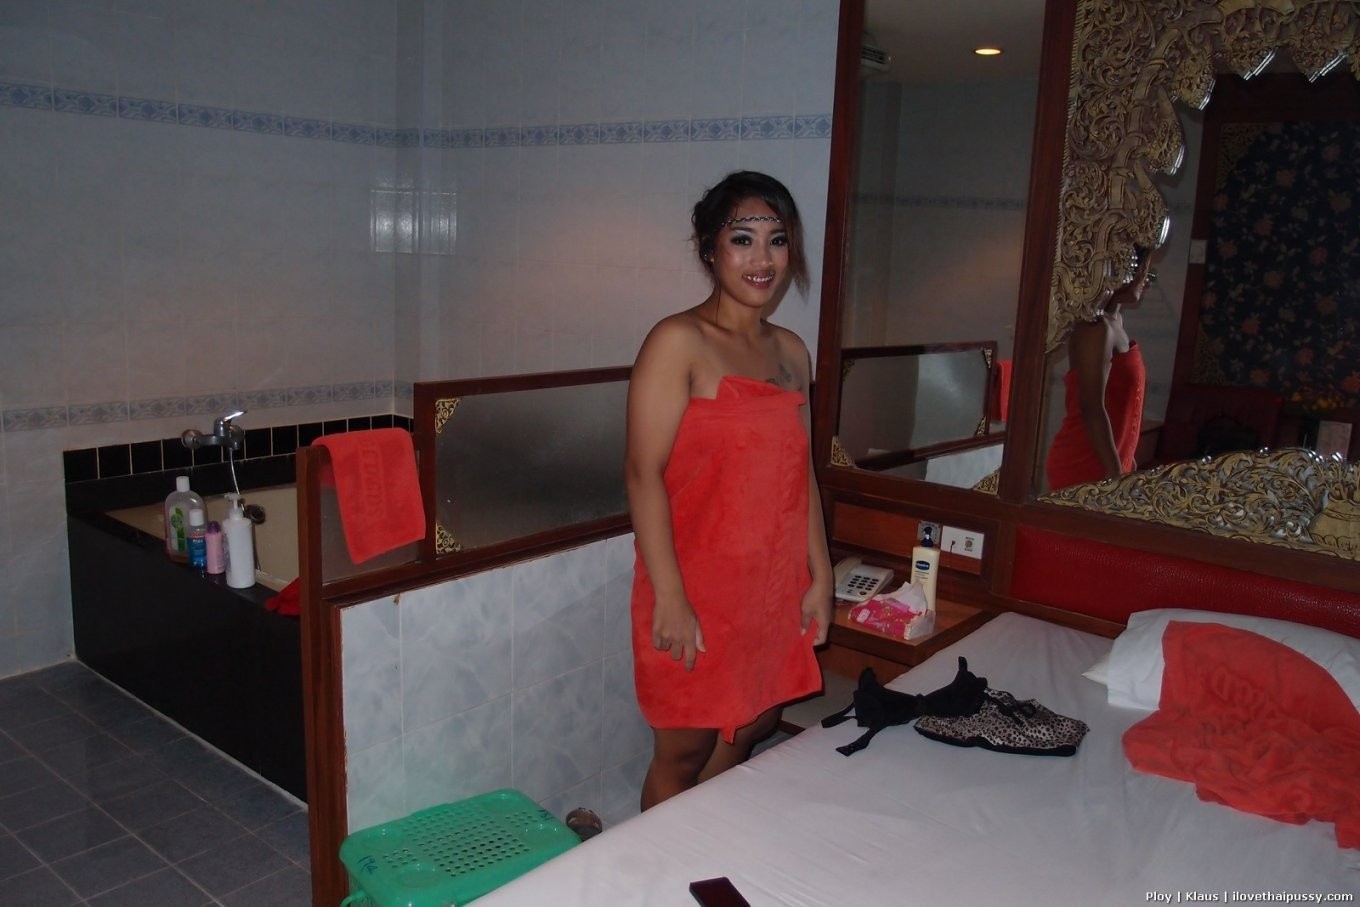 Schüchterne Bangkok Hure gefickt Bareback von schwedischen Sex-Touristen klaus asiatische Schlampe #68456853